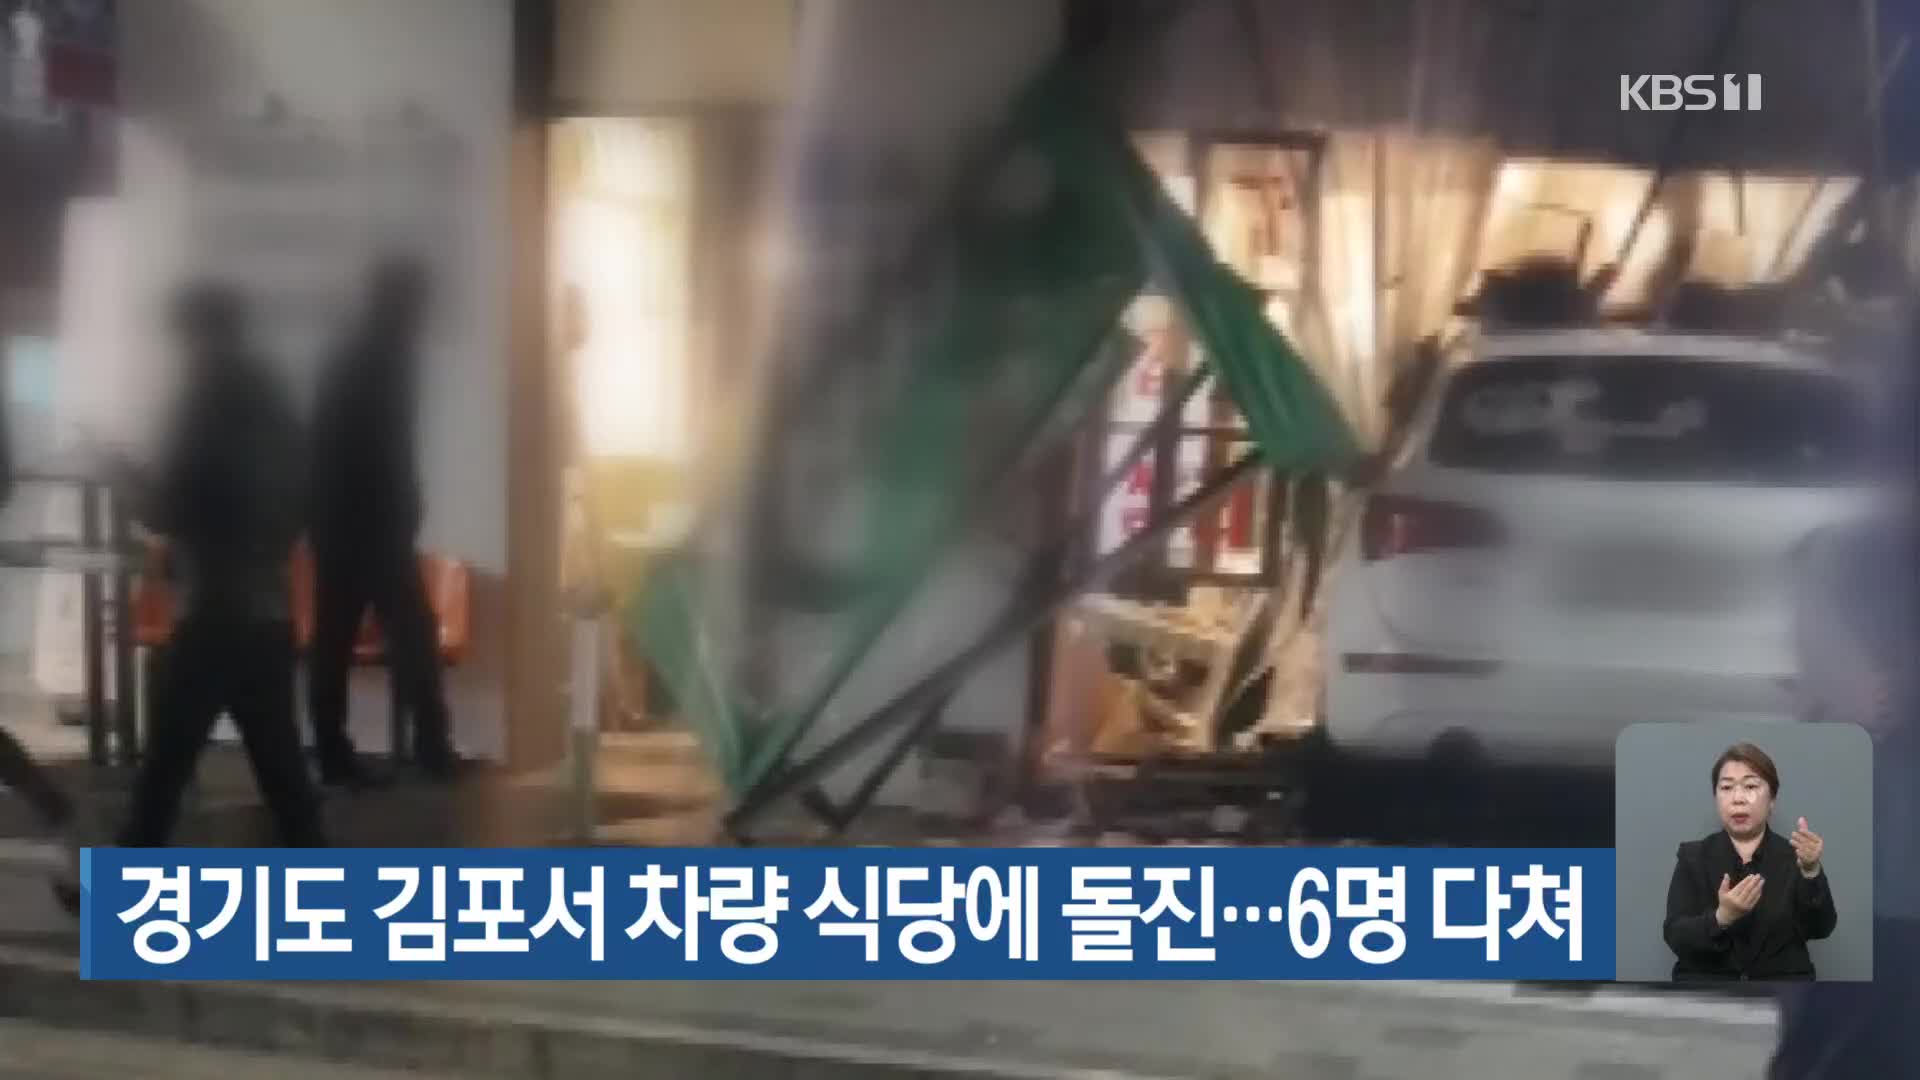 경기도 김포서 차량 식당에 돌진…6명 다쳐